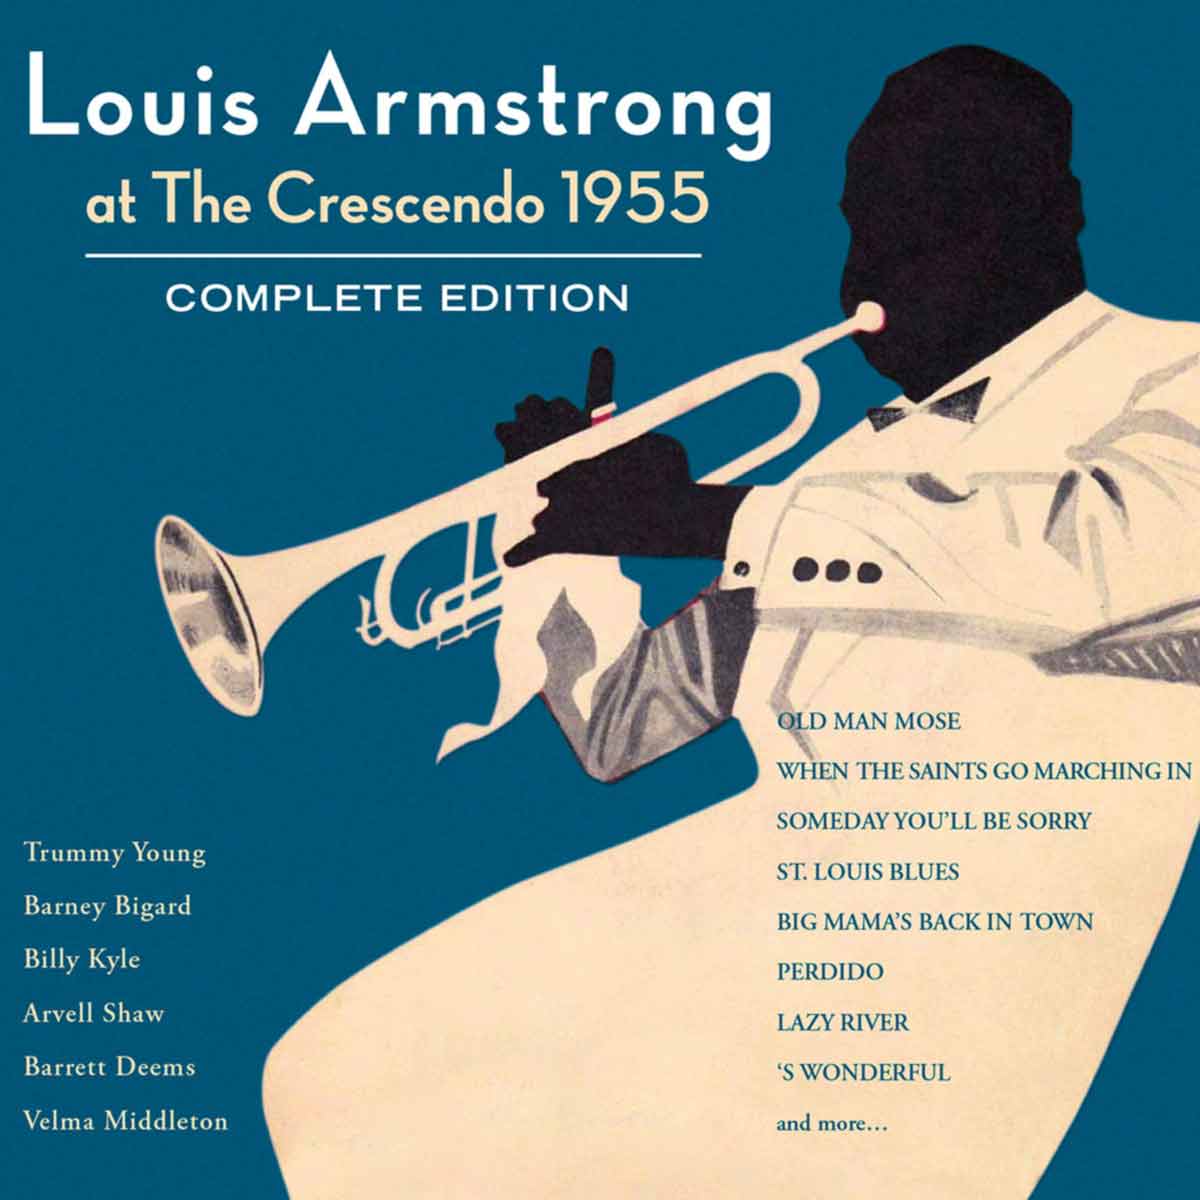 At The Crescendo 1955 - Complete Edition